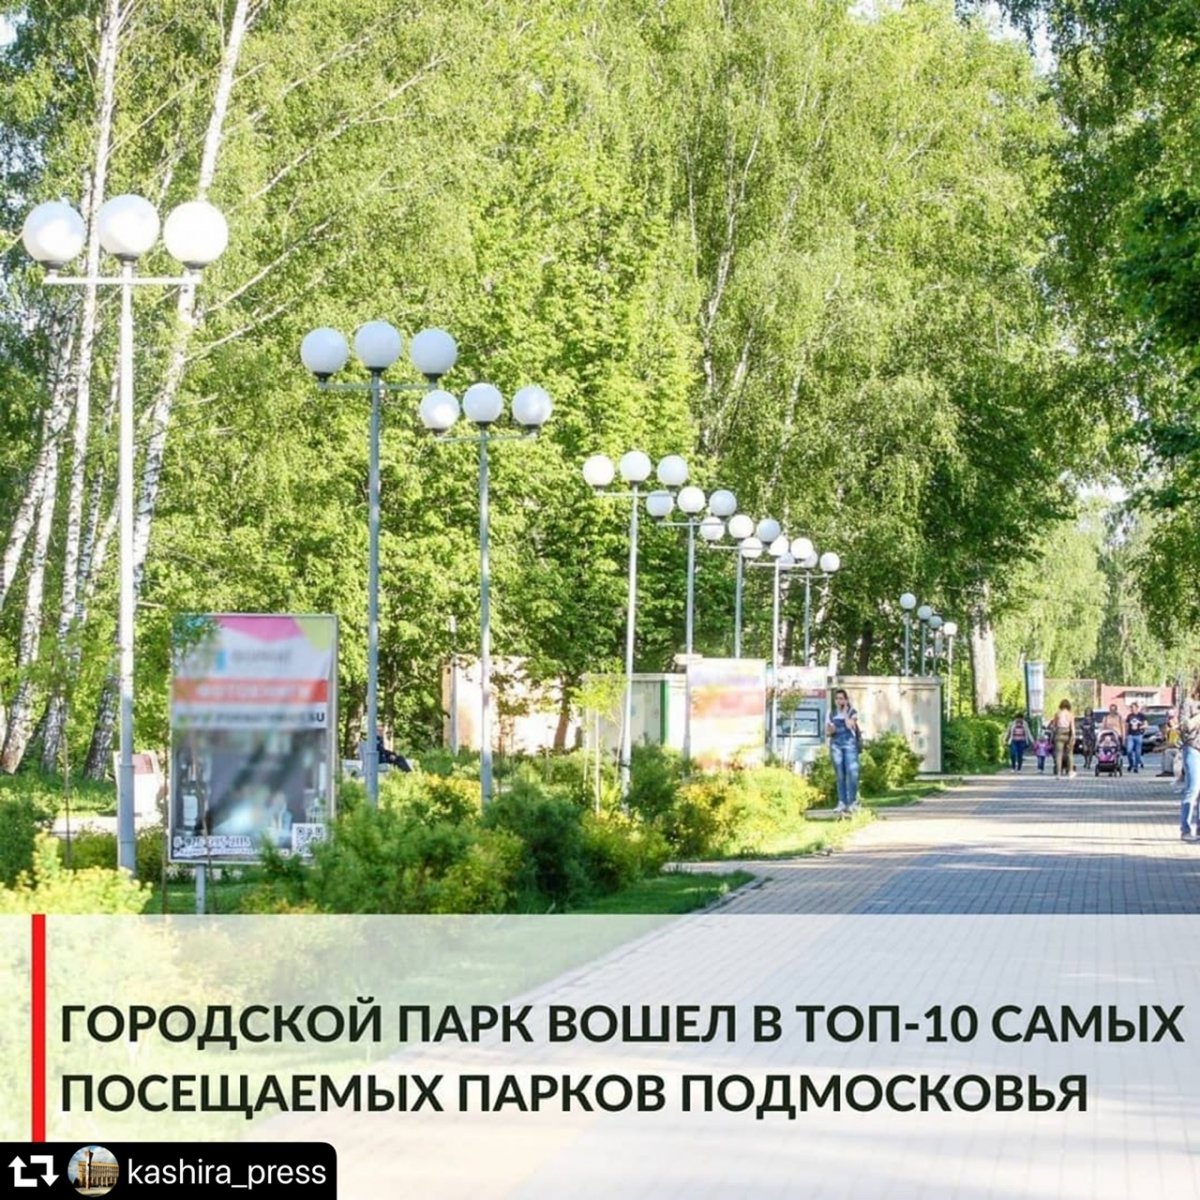 Городской парк вошёл в топ-10 самых посещаемых парков Подмосковья!